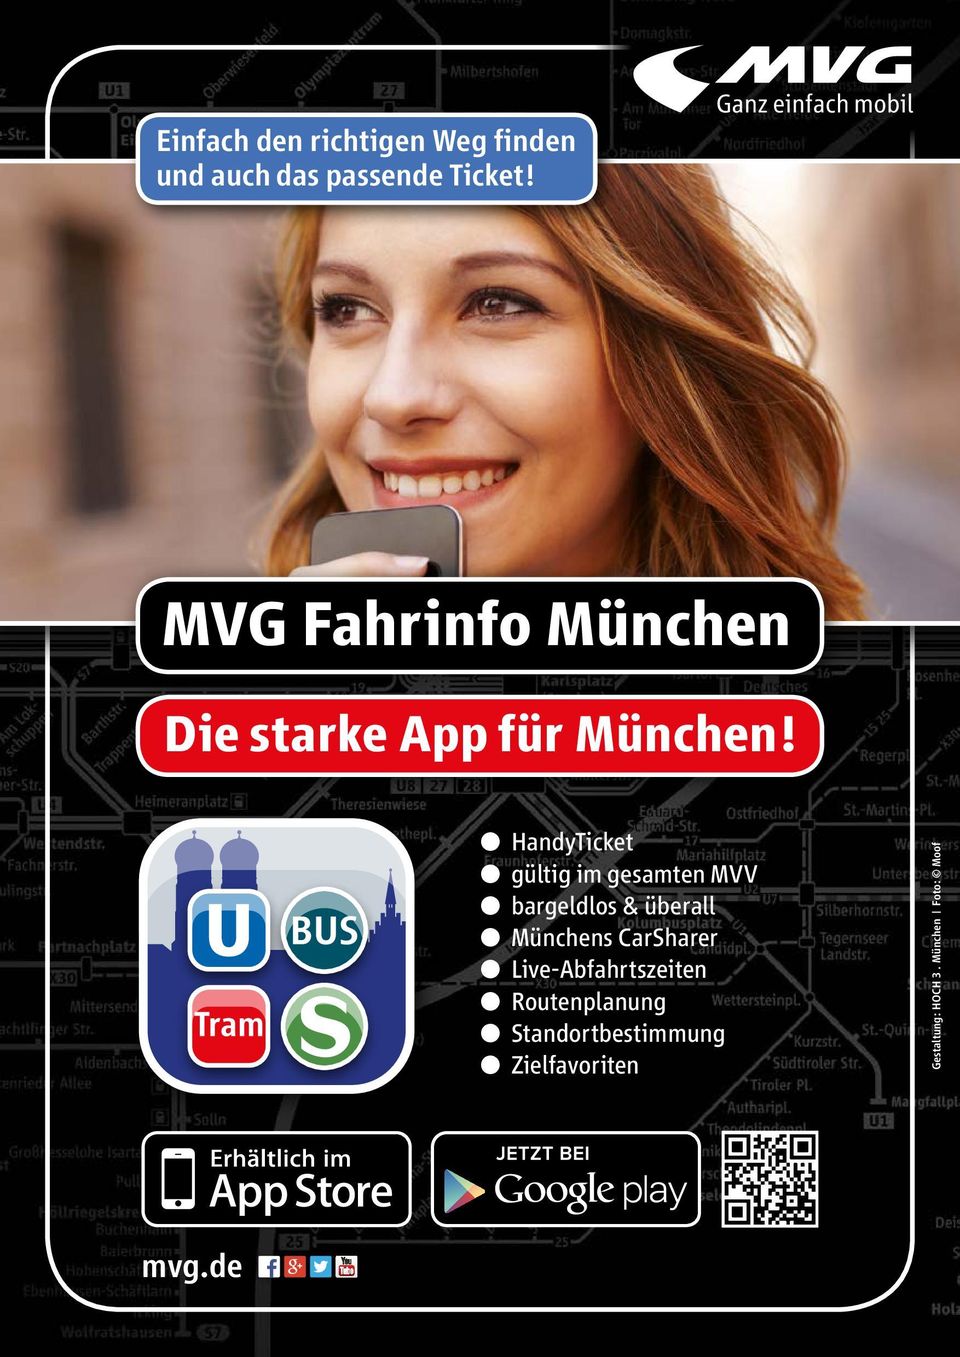 l HandyTicket l gültig im gesamten MVV l bargeldlos & überall l Münchens